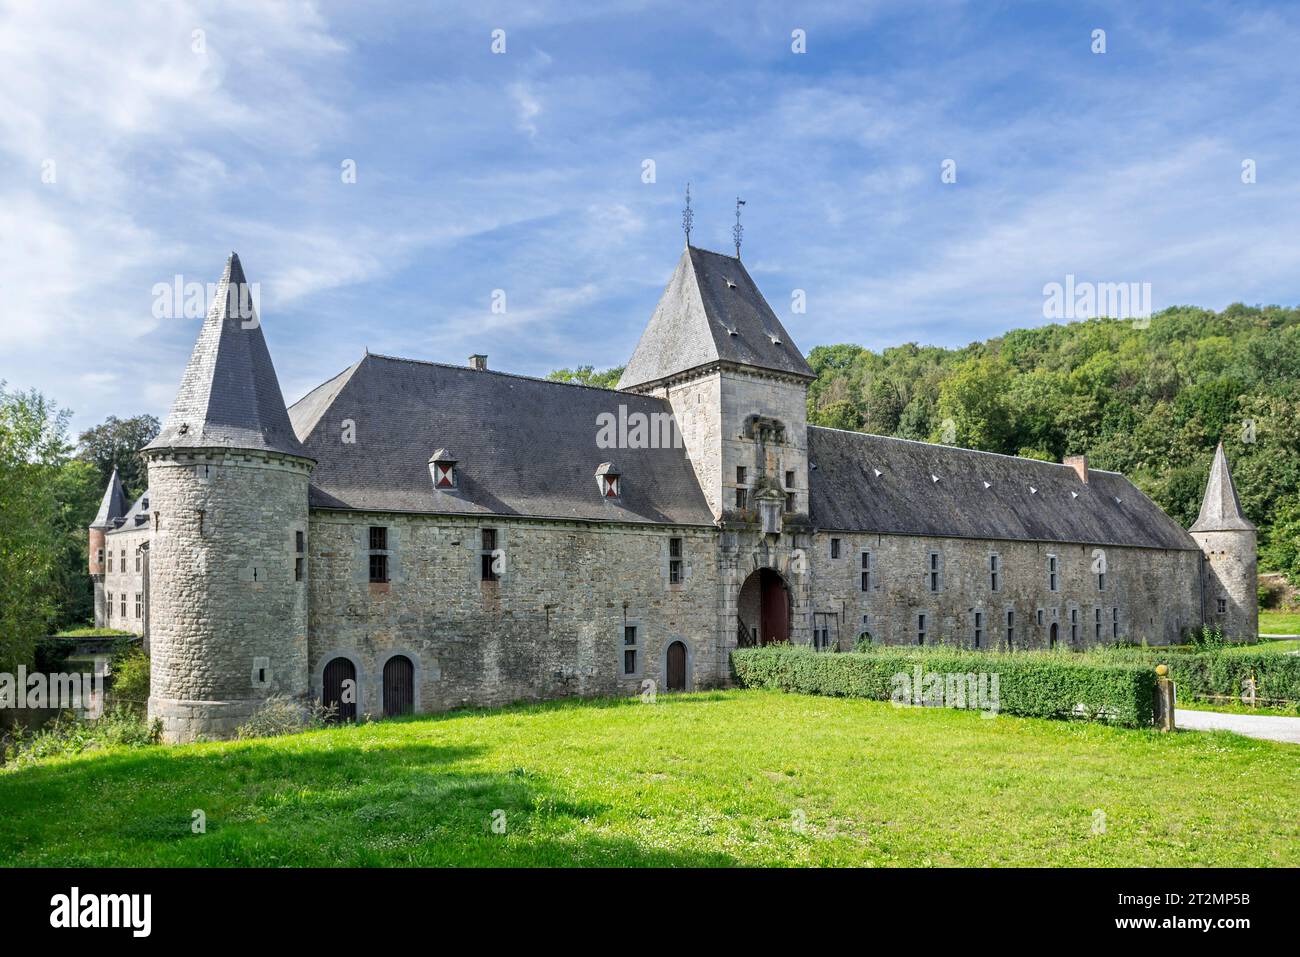 Château de Spontin, porte d'entrée d'un château médiéval à douves du 16e siècle près d'Yvoir, province de Namur, Ardennes belges, Wallonie, Belgique Banque D'Images